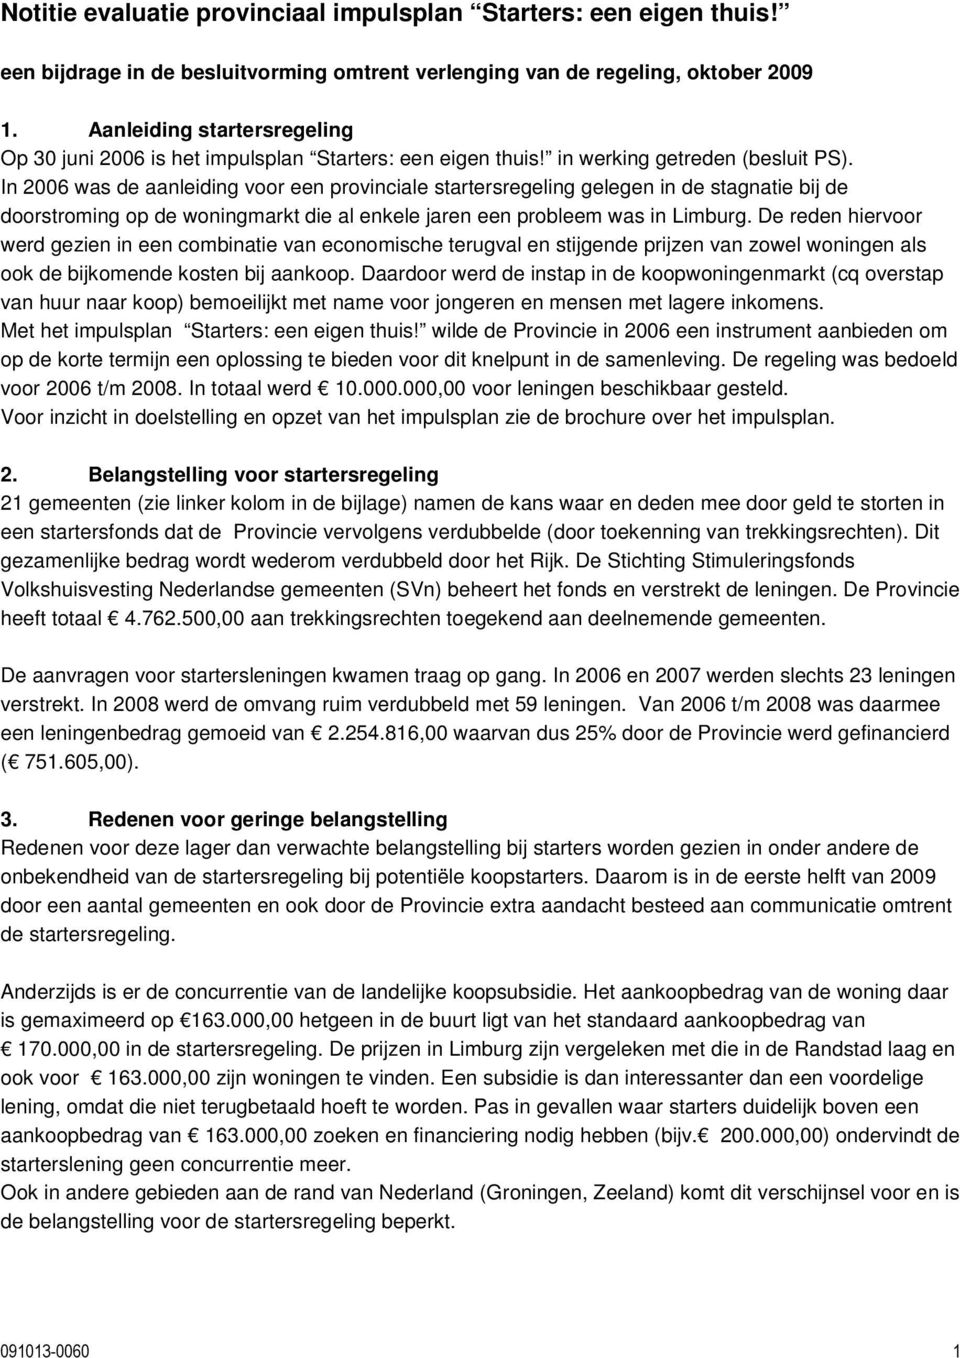 In 2006 was de aanleiding voor een provinciale startersregeling gelegen in de stagnatie bij de doorstroming op de woningmarkt die al enkele jaren een probleem was in Limburg.